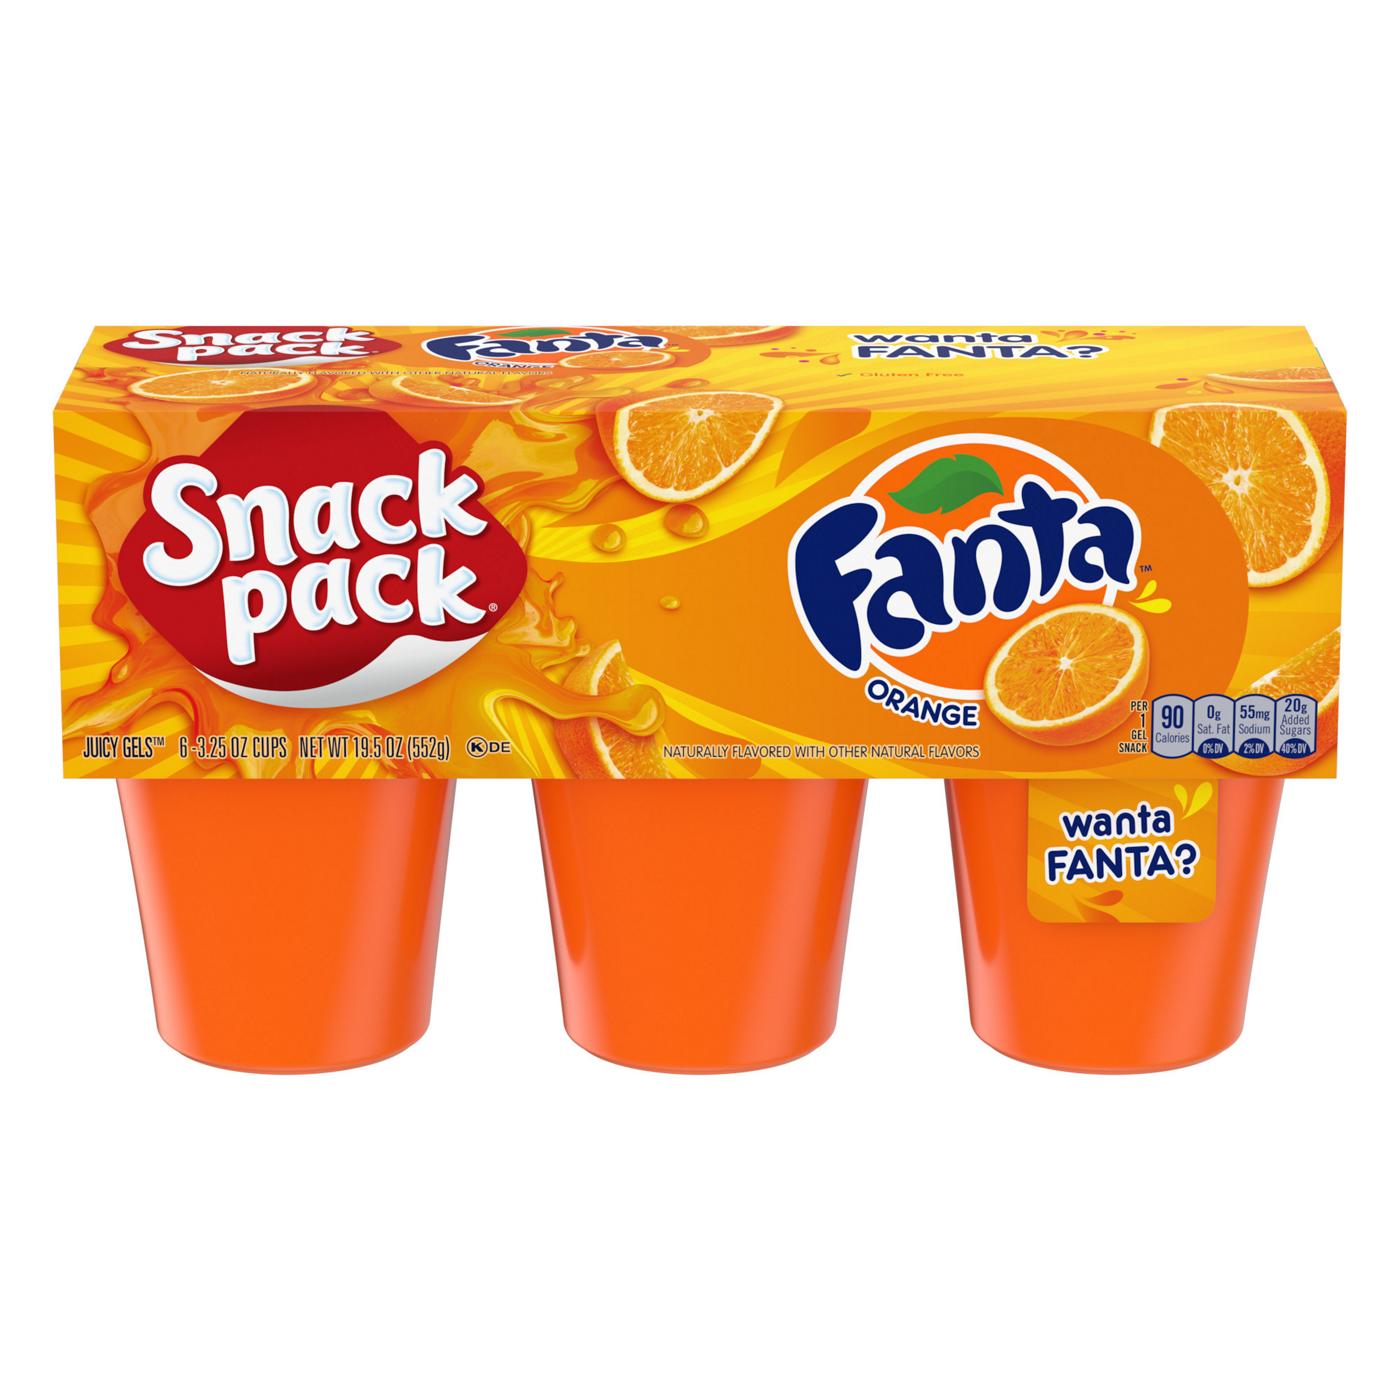 Snack Pack Fanta Orange Juicy Gels Cups; image 1 of 7